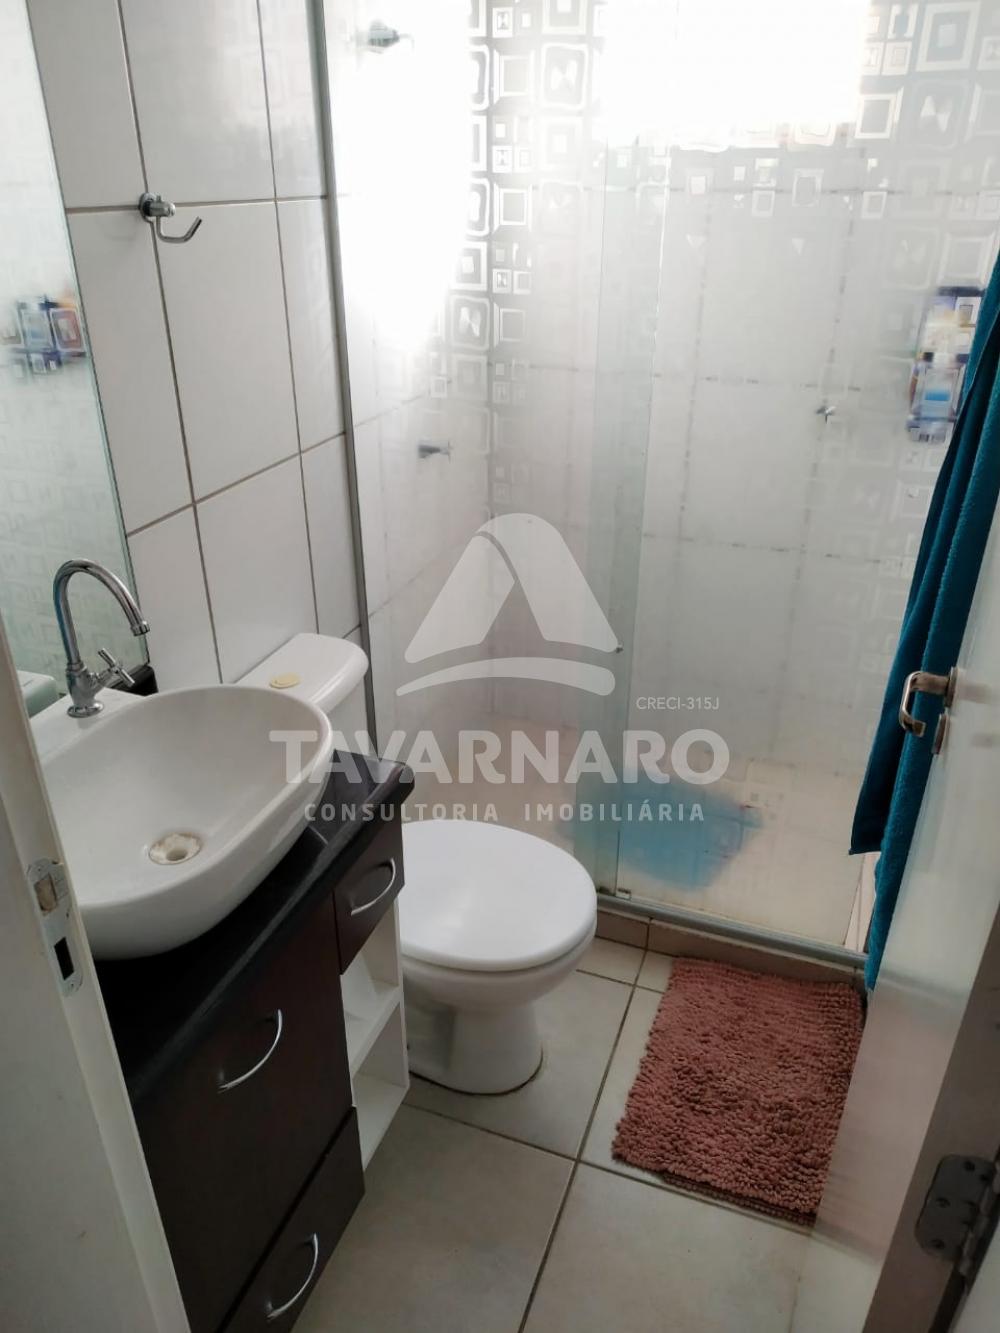 Comprar Apartamento / Padrão em Ponta Grossa R$ 118.000,00 - Foto 8